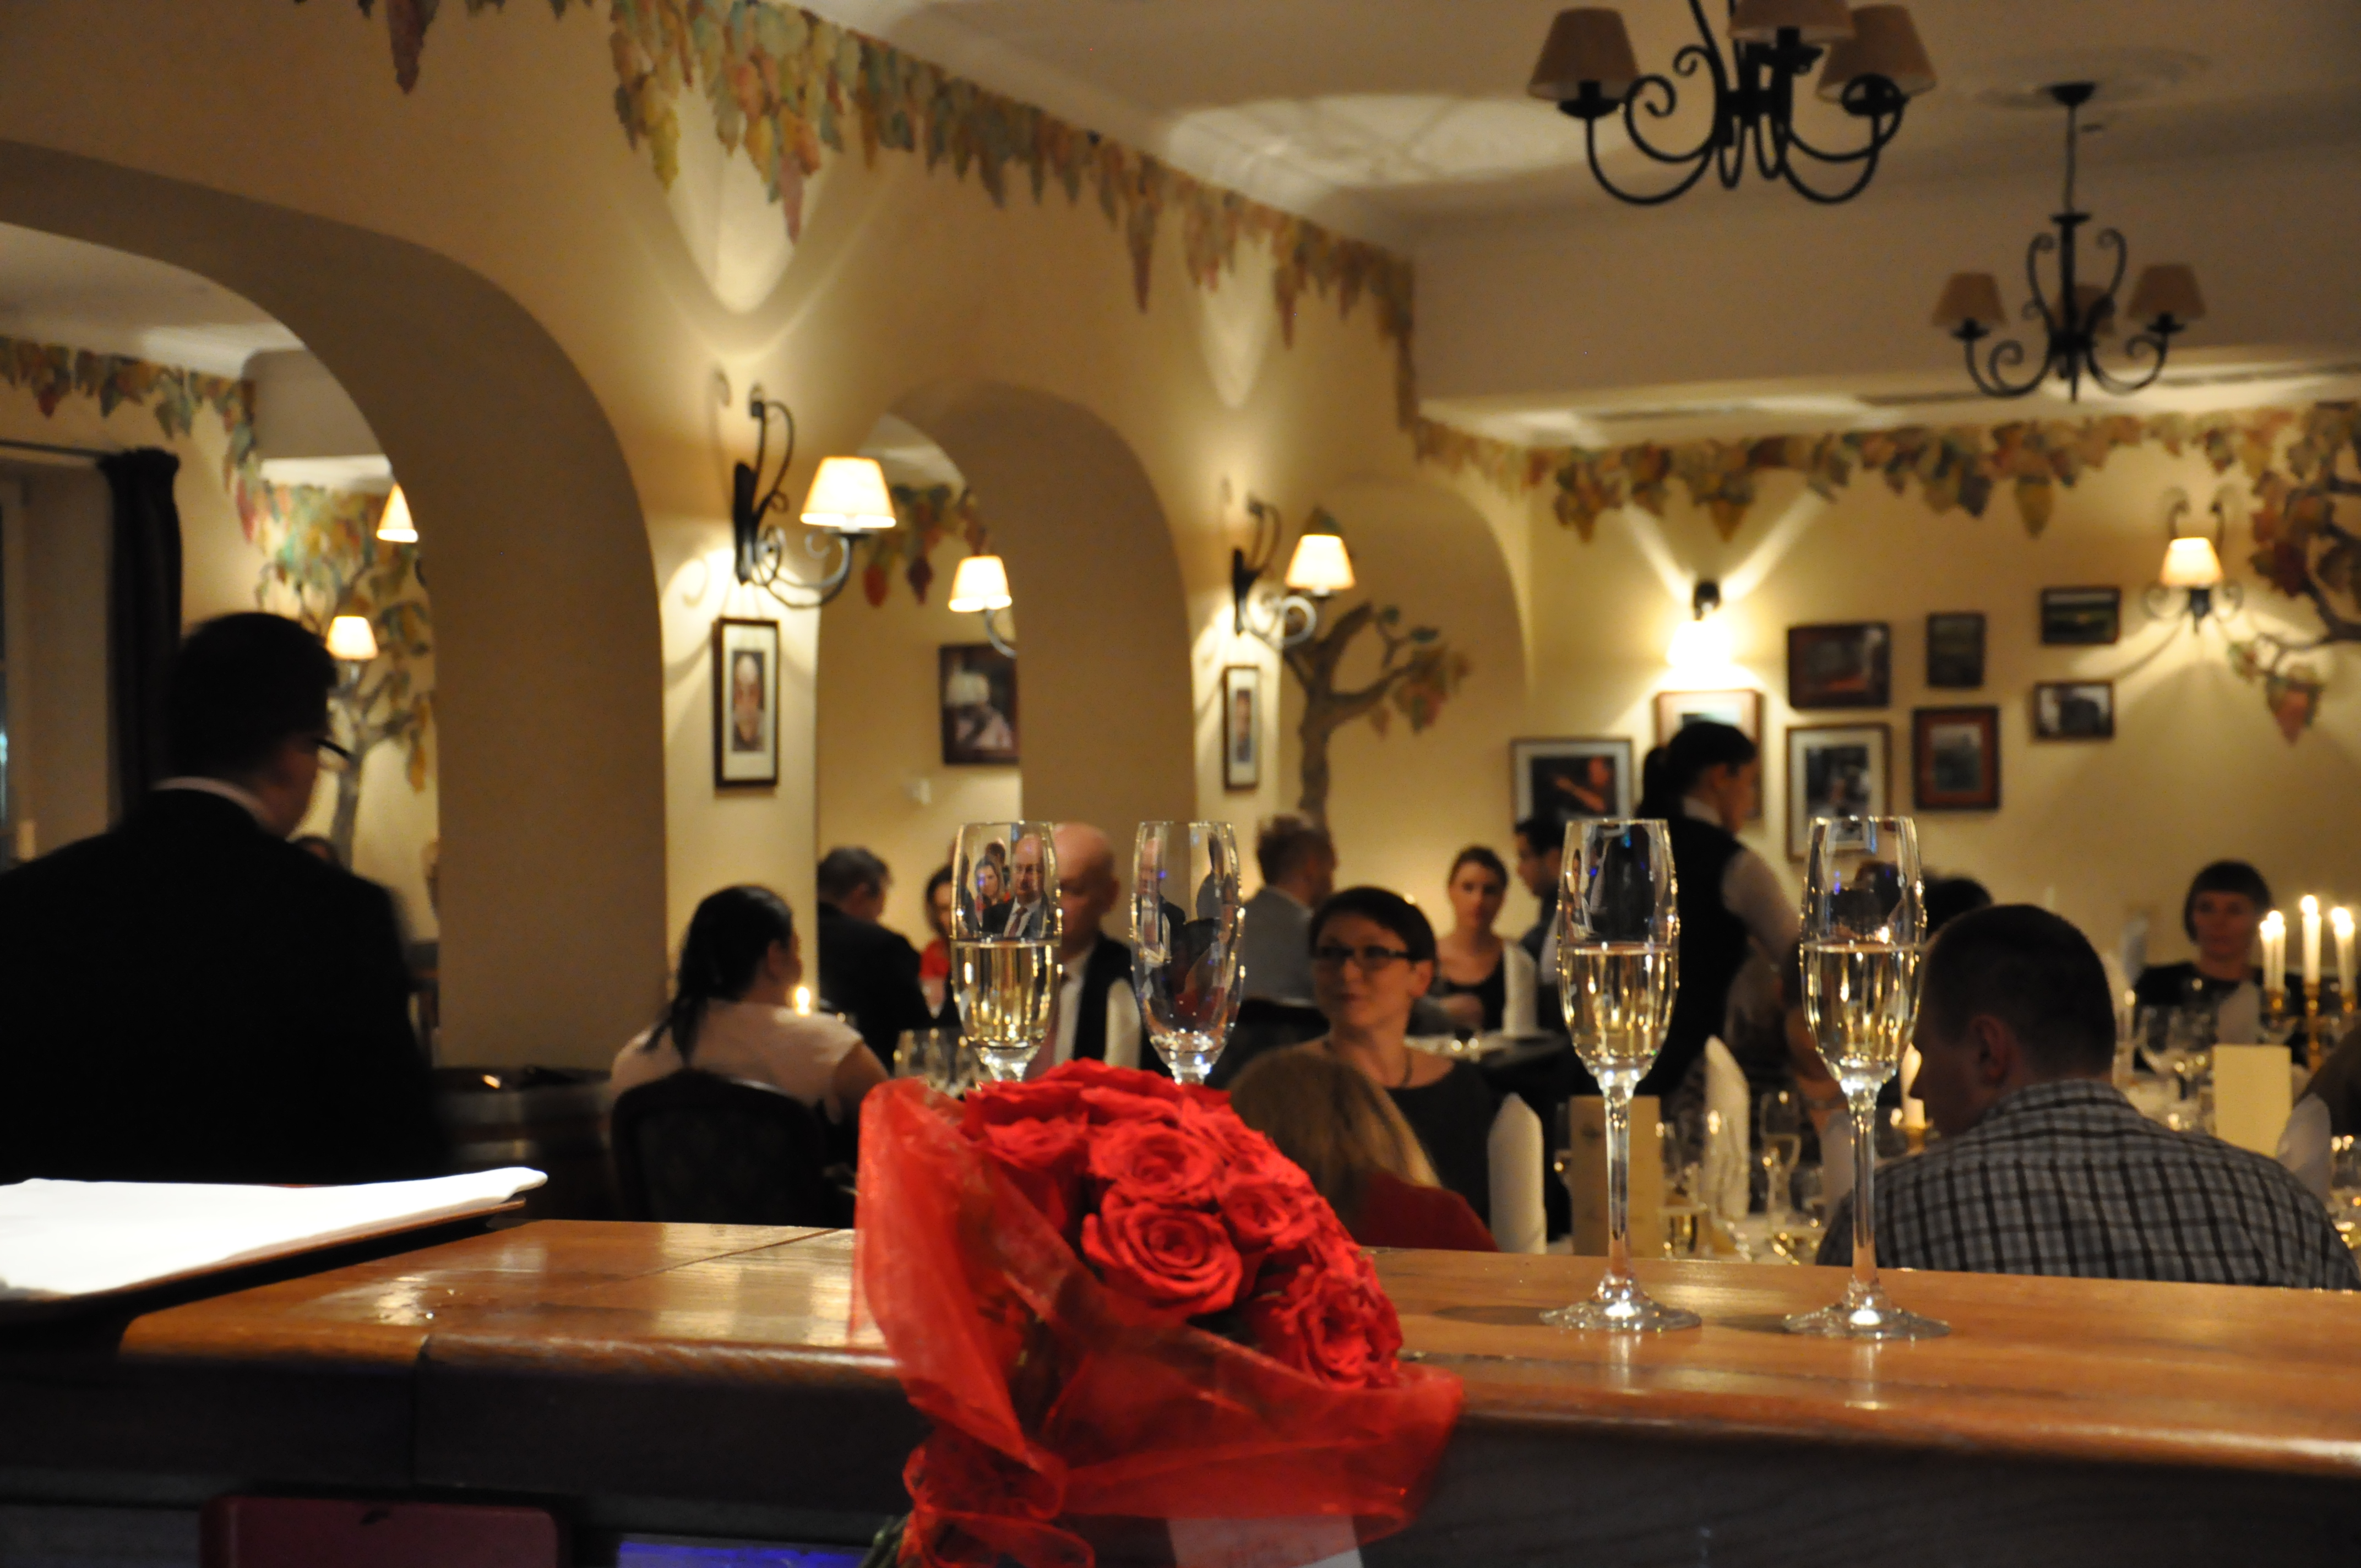 Walentynki "Last Minute" | Romantyczna kolacja z winem 